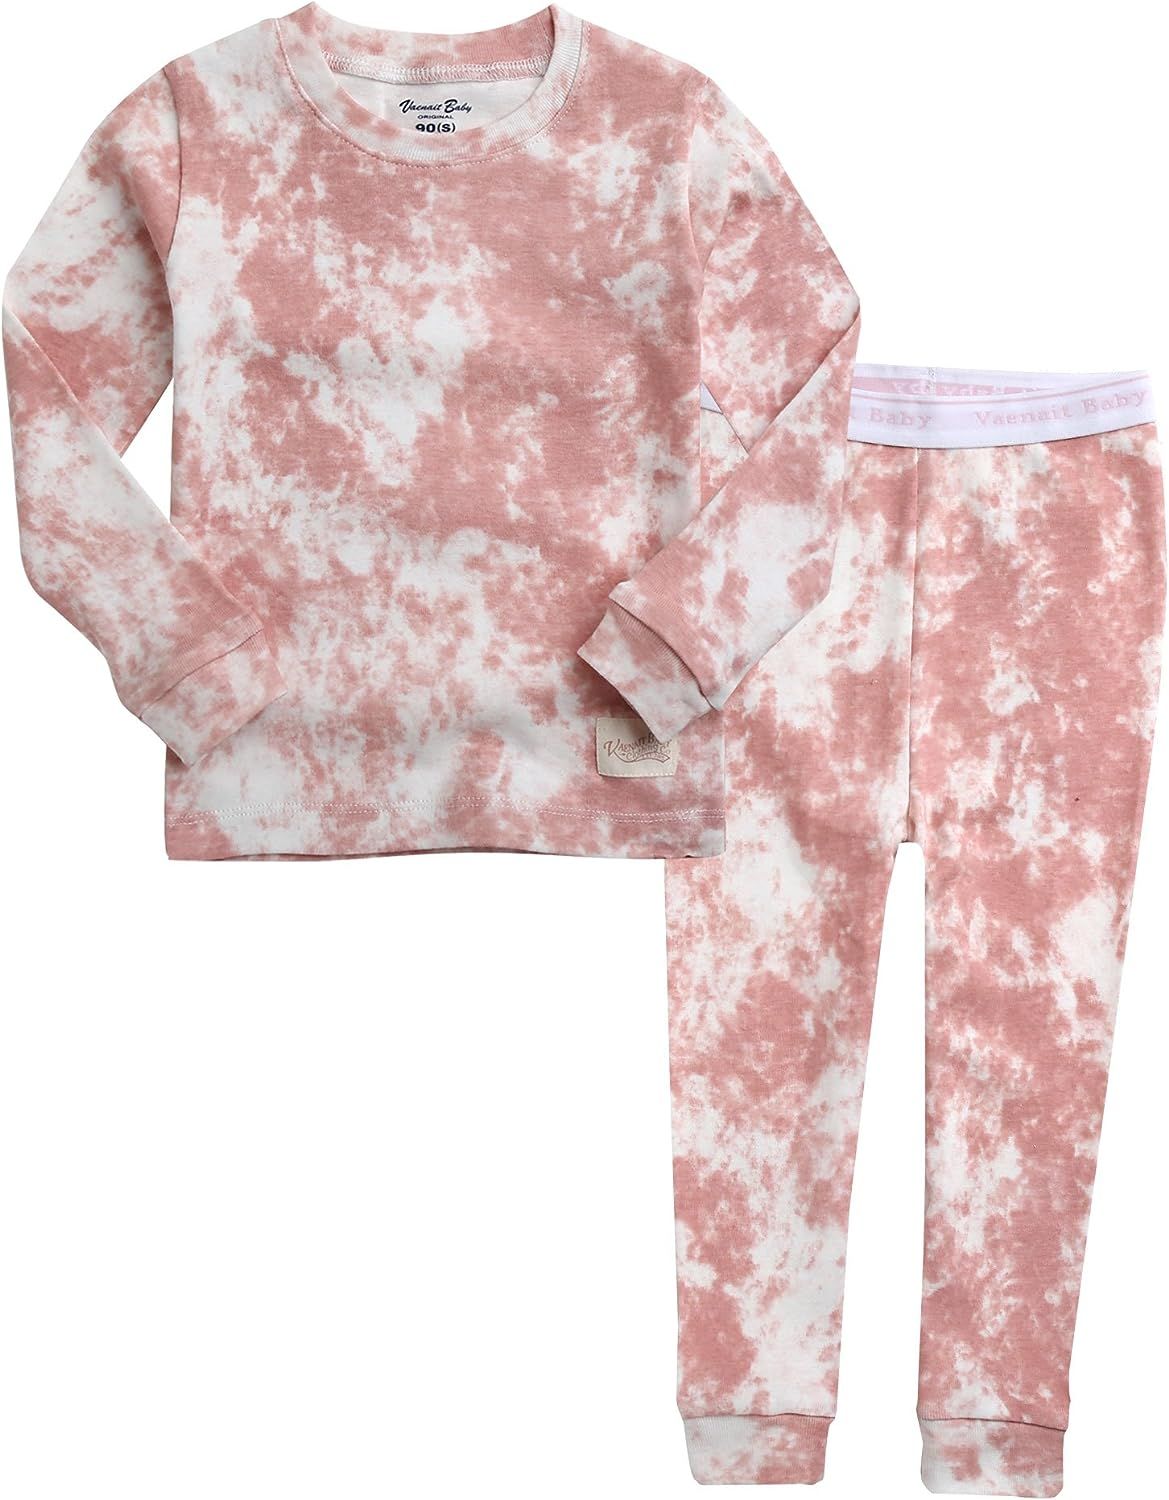 VAENAIT BABY 12M-12 Toddler Kids Boys Girls 100% Cotton Marbling Snug Fit Sleepwear Pajamas 2pcs ... | Amazon (US)